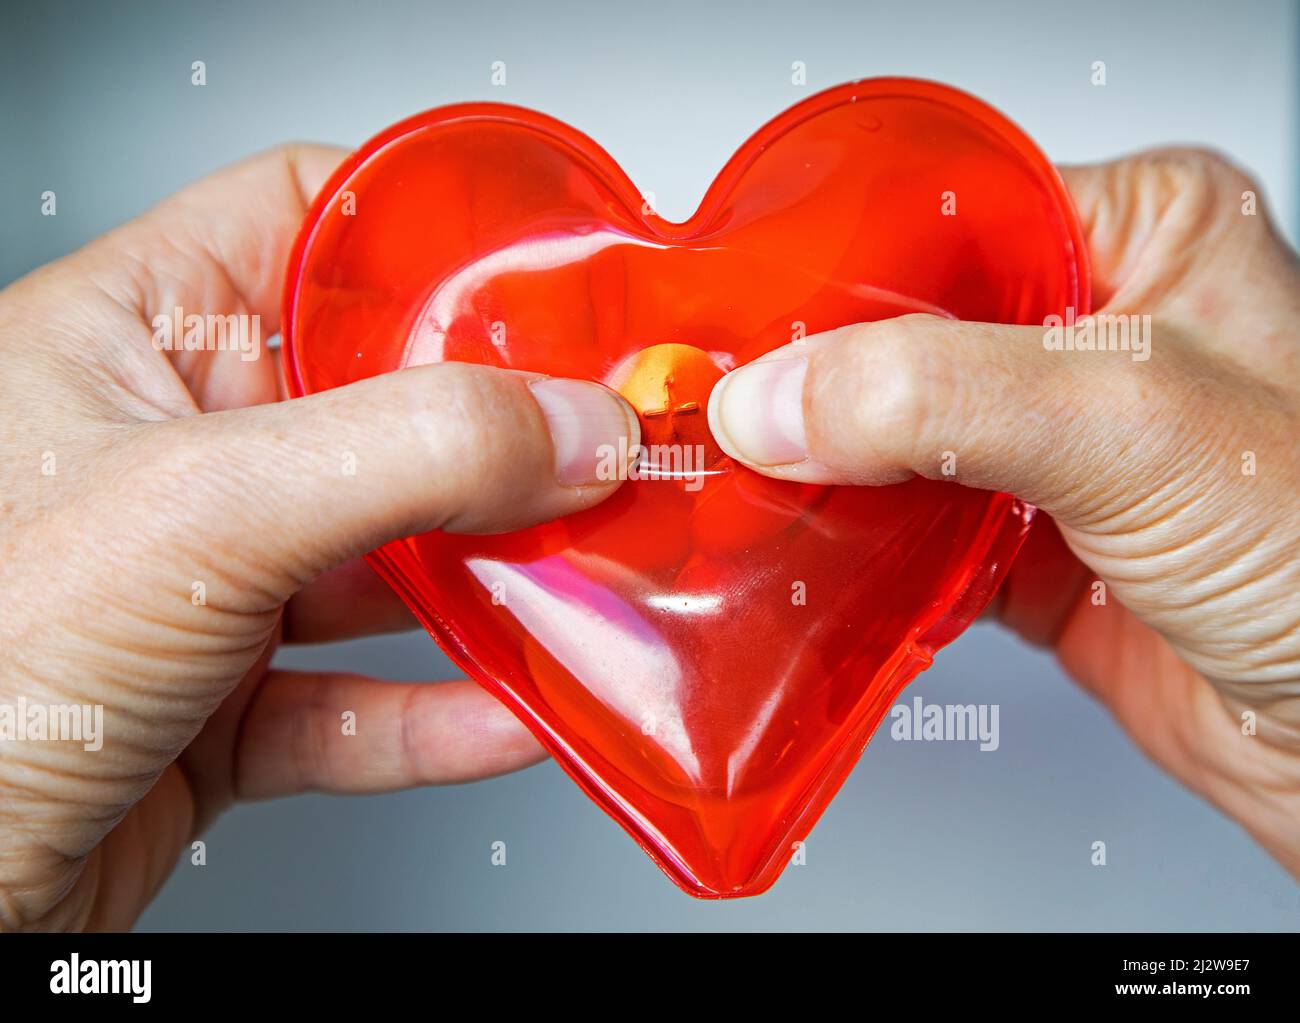 Forme de coeur du pack thermique réutilisable. Chauffe-mains en forme de coeur rempli de gel apaisant est une promotion parfaite des soins de santé. Fixez la tablette pour activer la chaleur Banque D'Images